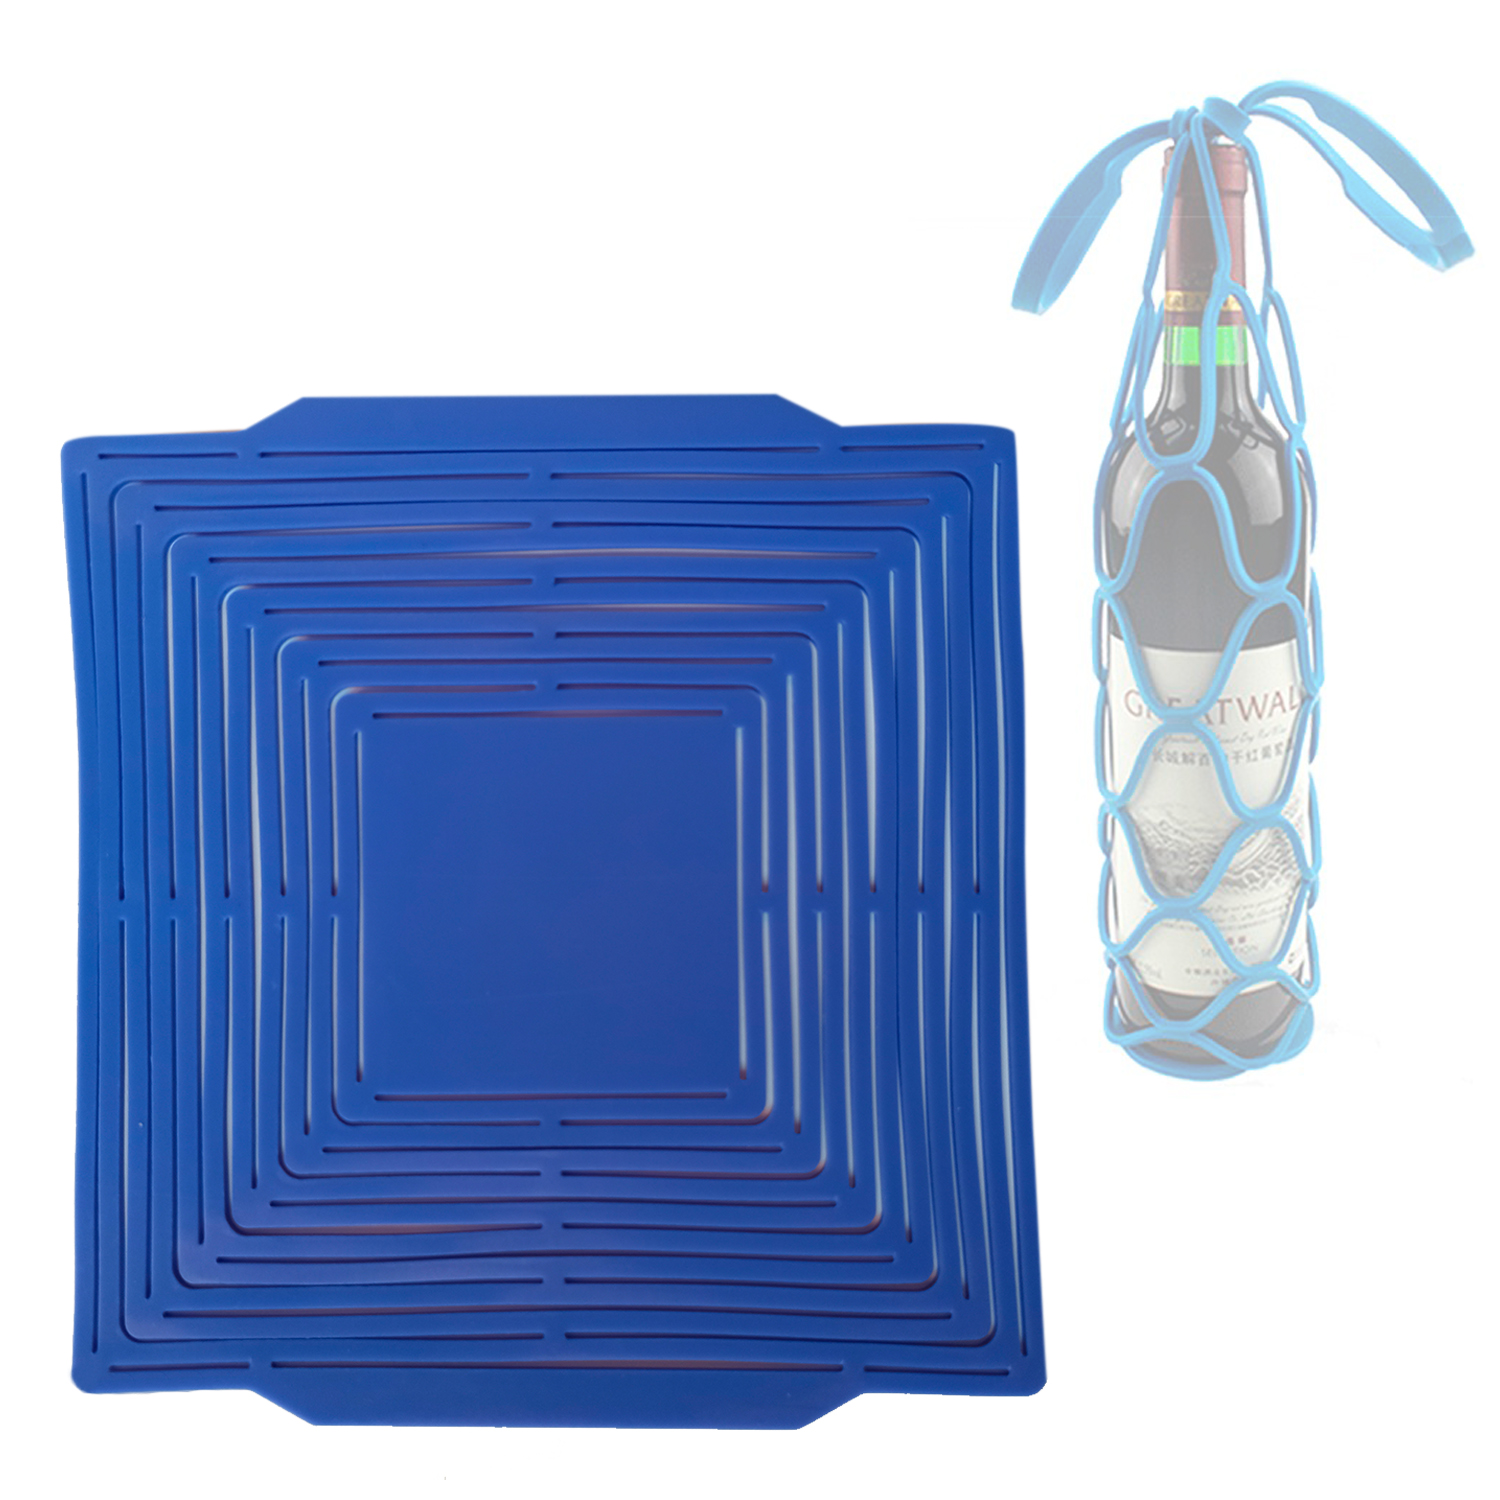 фото Складная сумка-сетка из жаростойкого силикона bh-slb-03, цвет синий, 21х20 см bloominghome accents.